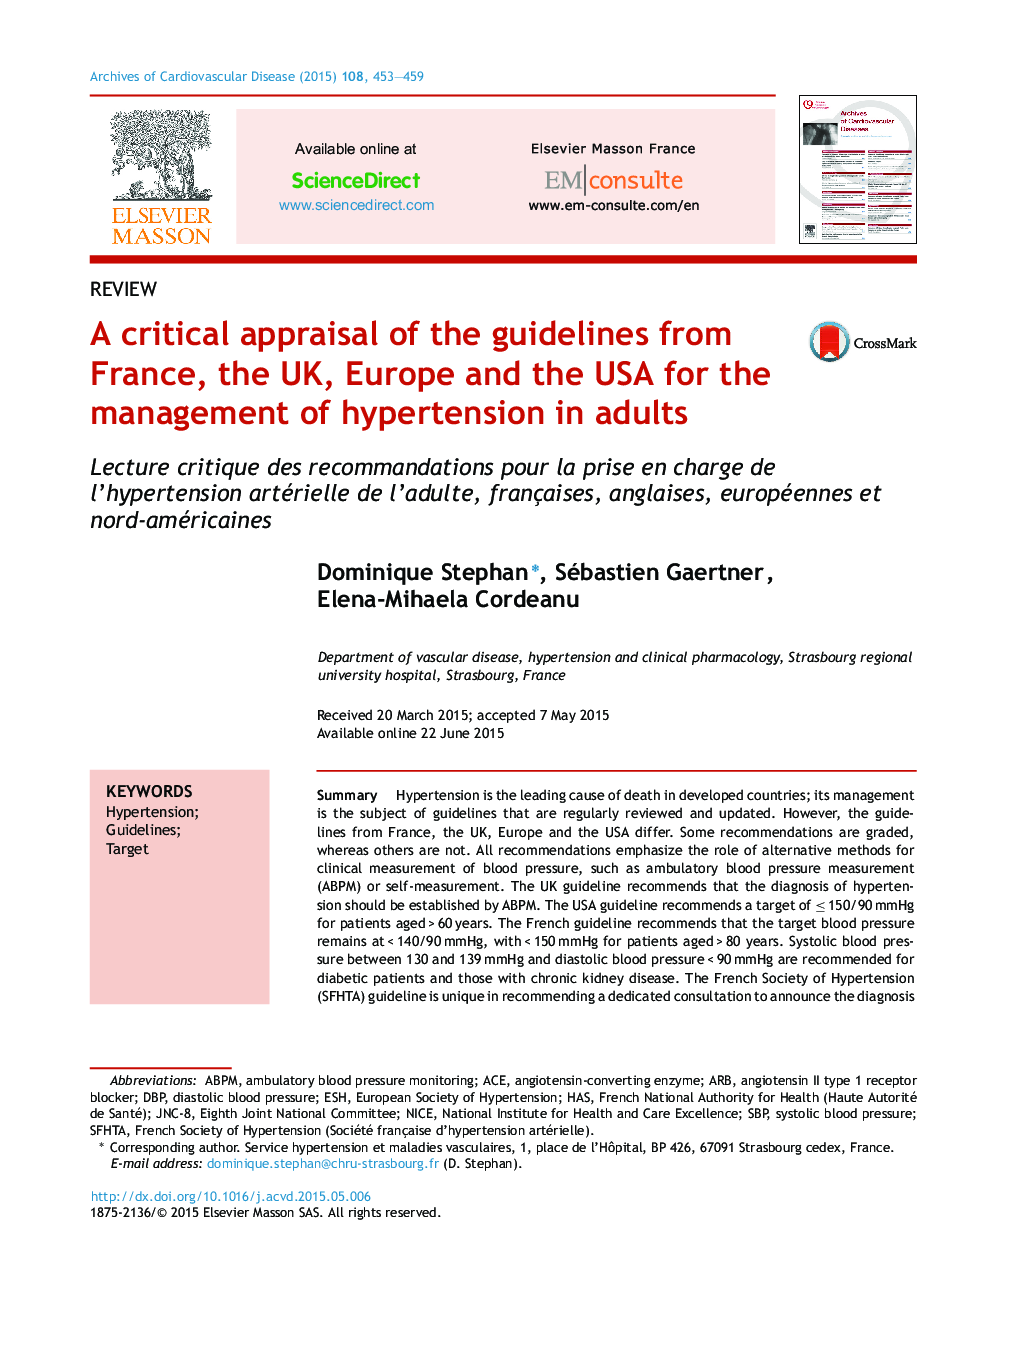 ارزیابی انتقادی از دستورالعمل های فرانسه، انگلستان، اروپا و ایالات متحده آمریکا برای مدیریت فشار خون بالا در بزرگسالان 